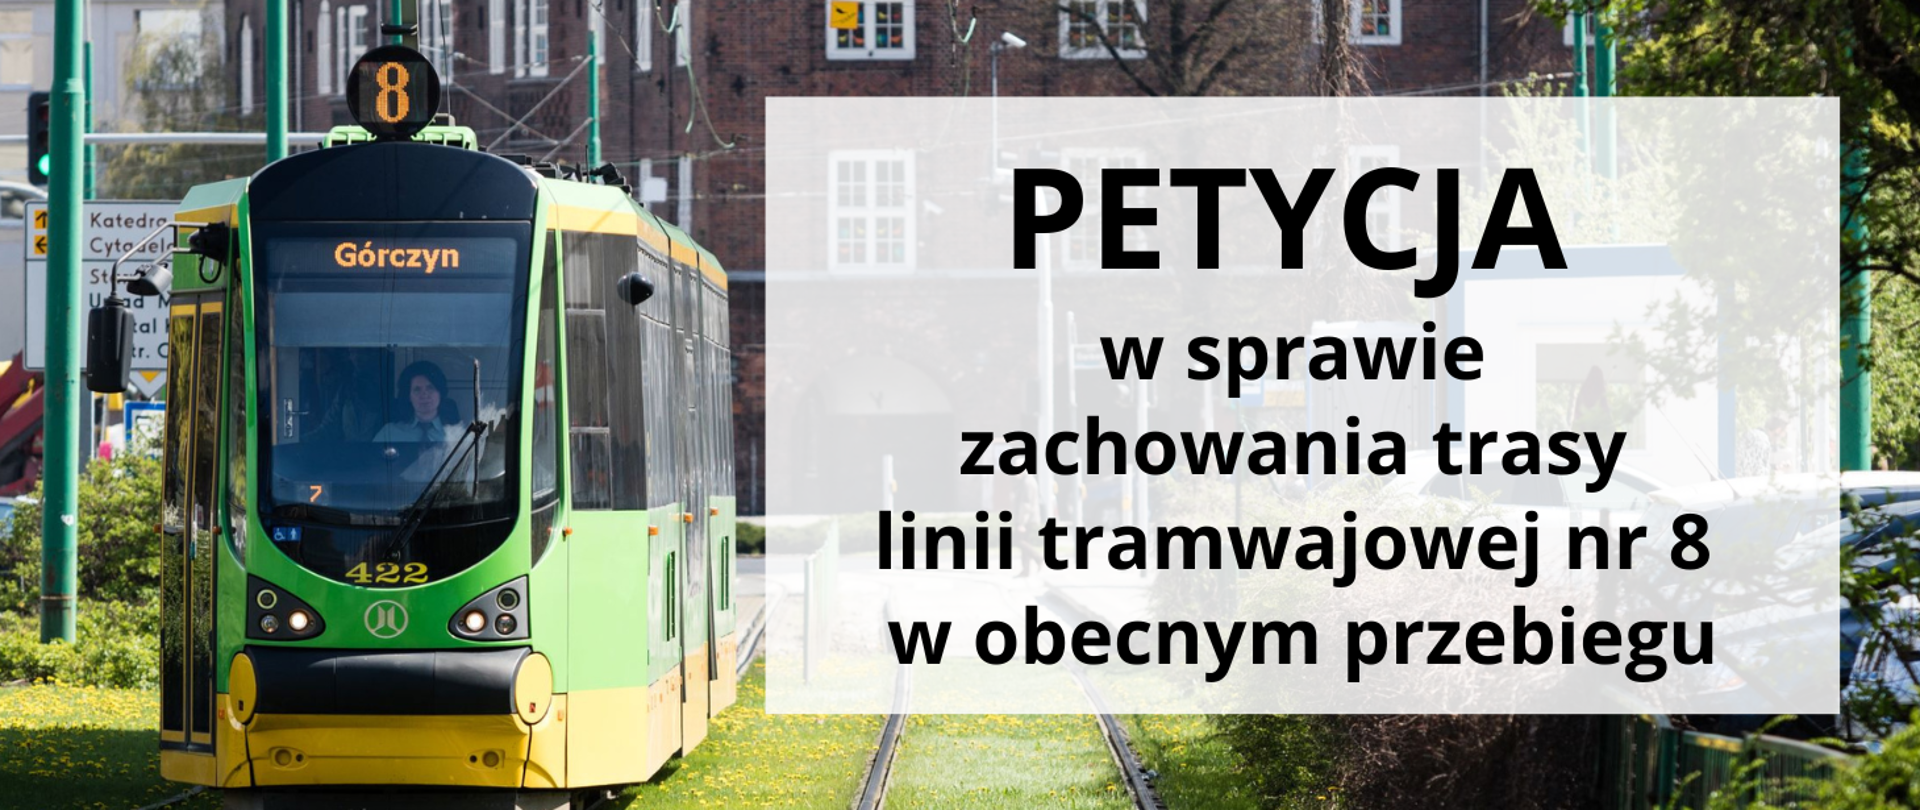 Baner na tel zdjęcia tramwaju nr 8 z tekstem: PETYCJA w sprawie zachowania trasy linii tramwajowej nr 8 w obecnym przebiegu.